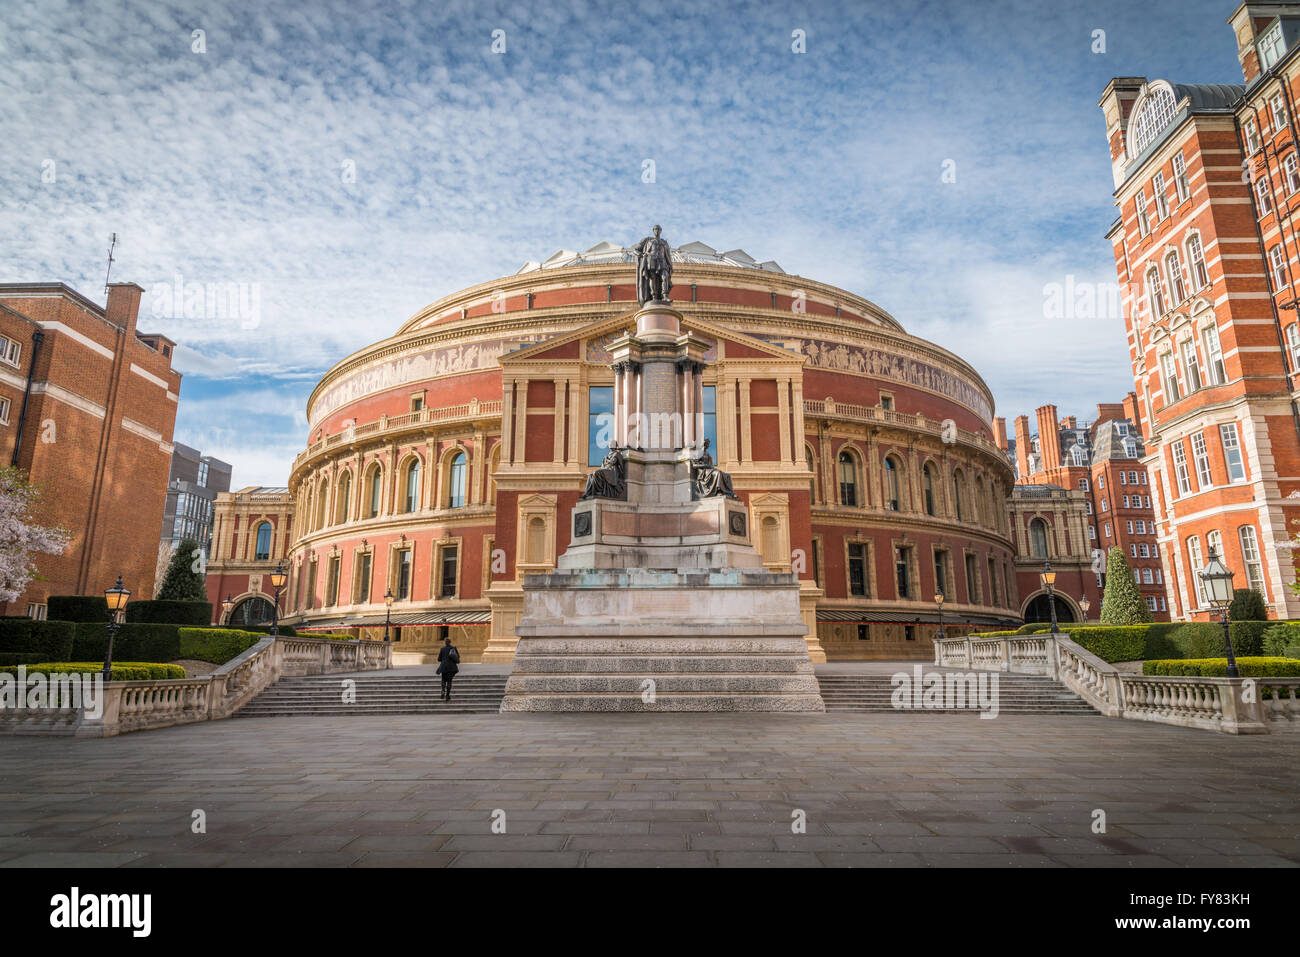 Albert Hall aperto nel 1871 con una capacità di fino a 5,272 posti a sedere per la musica classica e concerti di musica pop, opera, balletto, cerimonie di premiazione Foto Stock